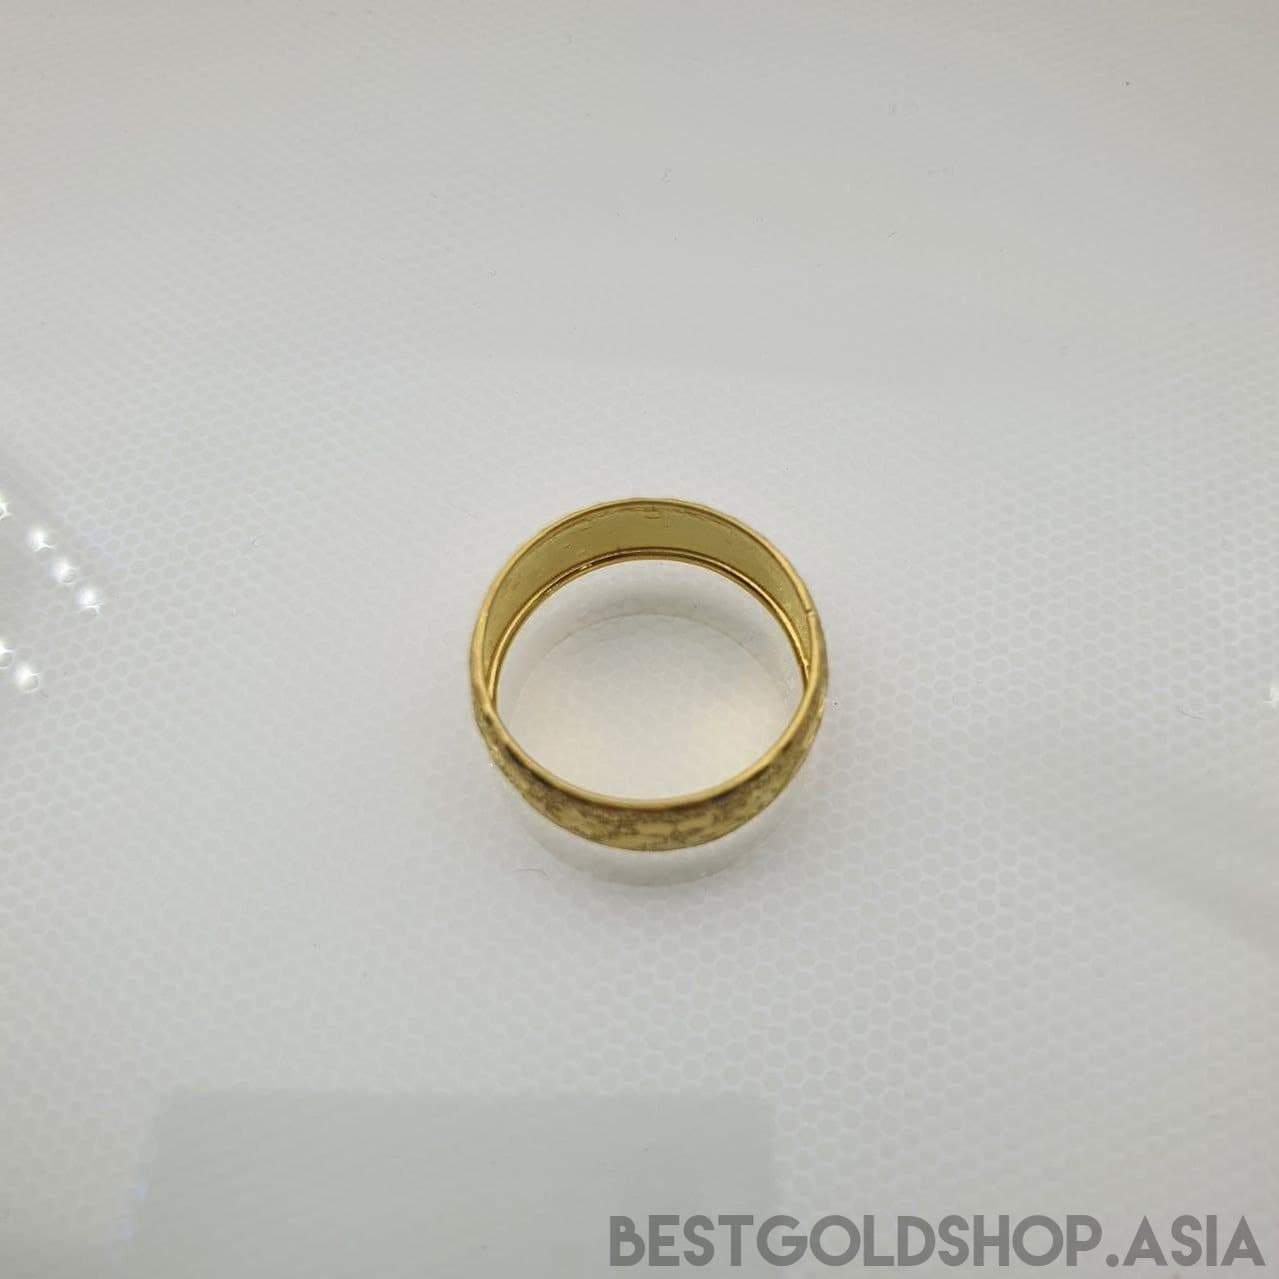 22k / 916 Gold Hollow Ring D5-916 gold-Best Gold Shop